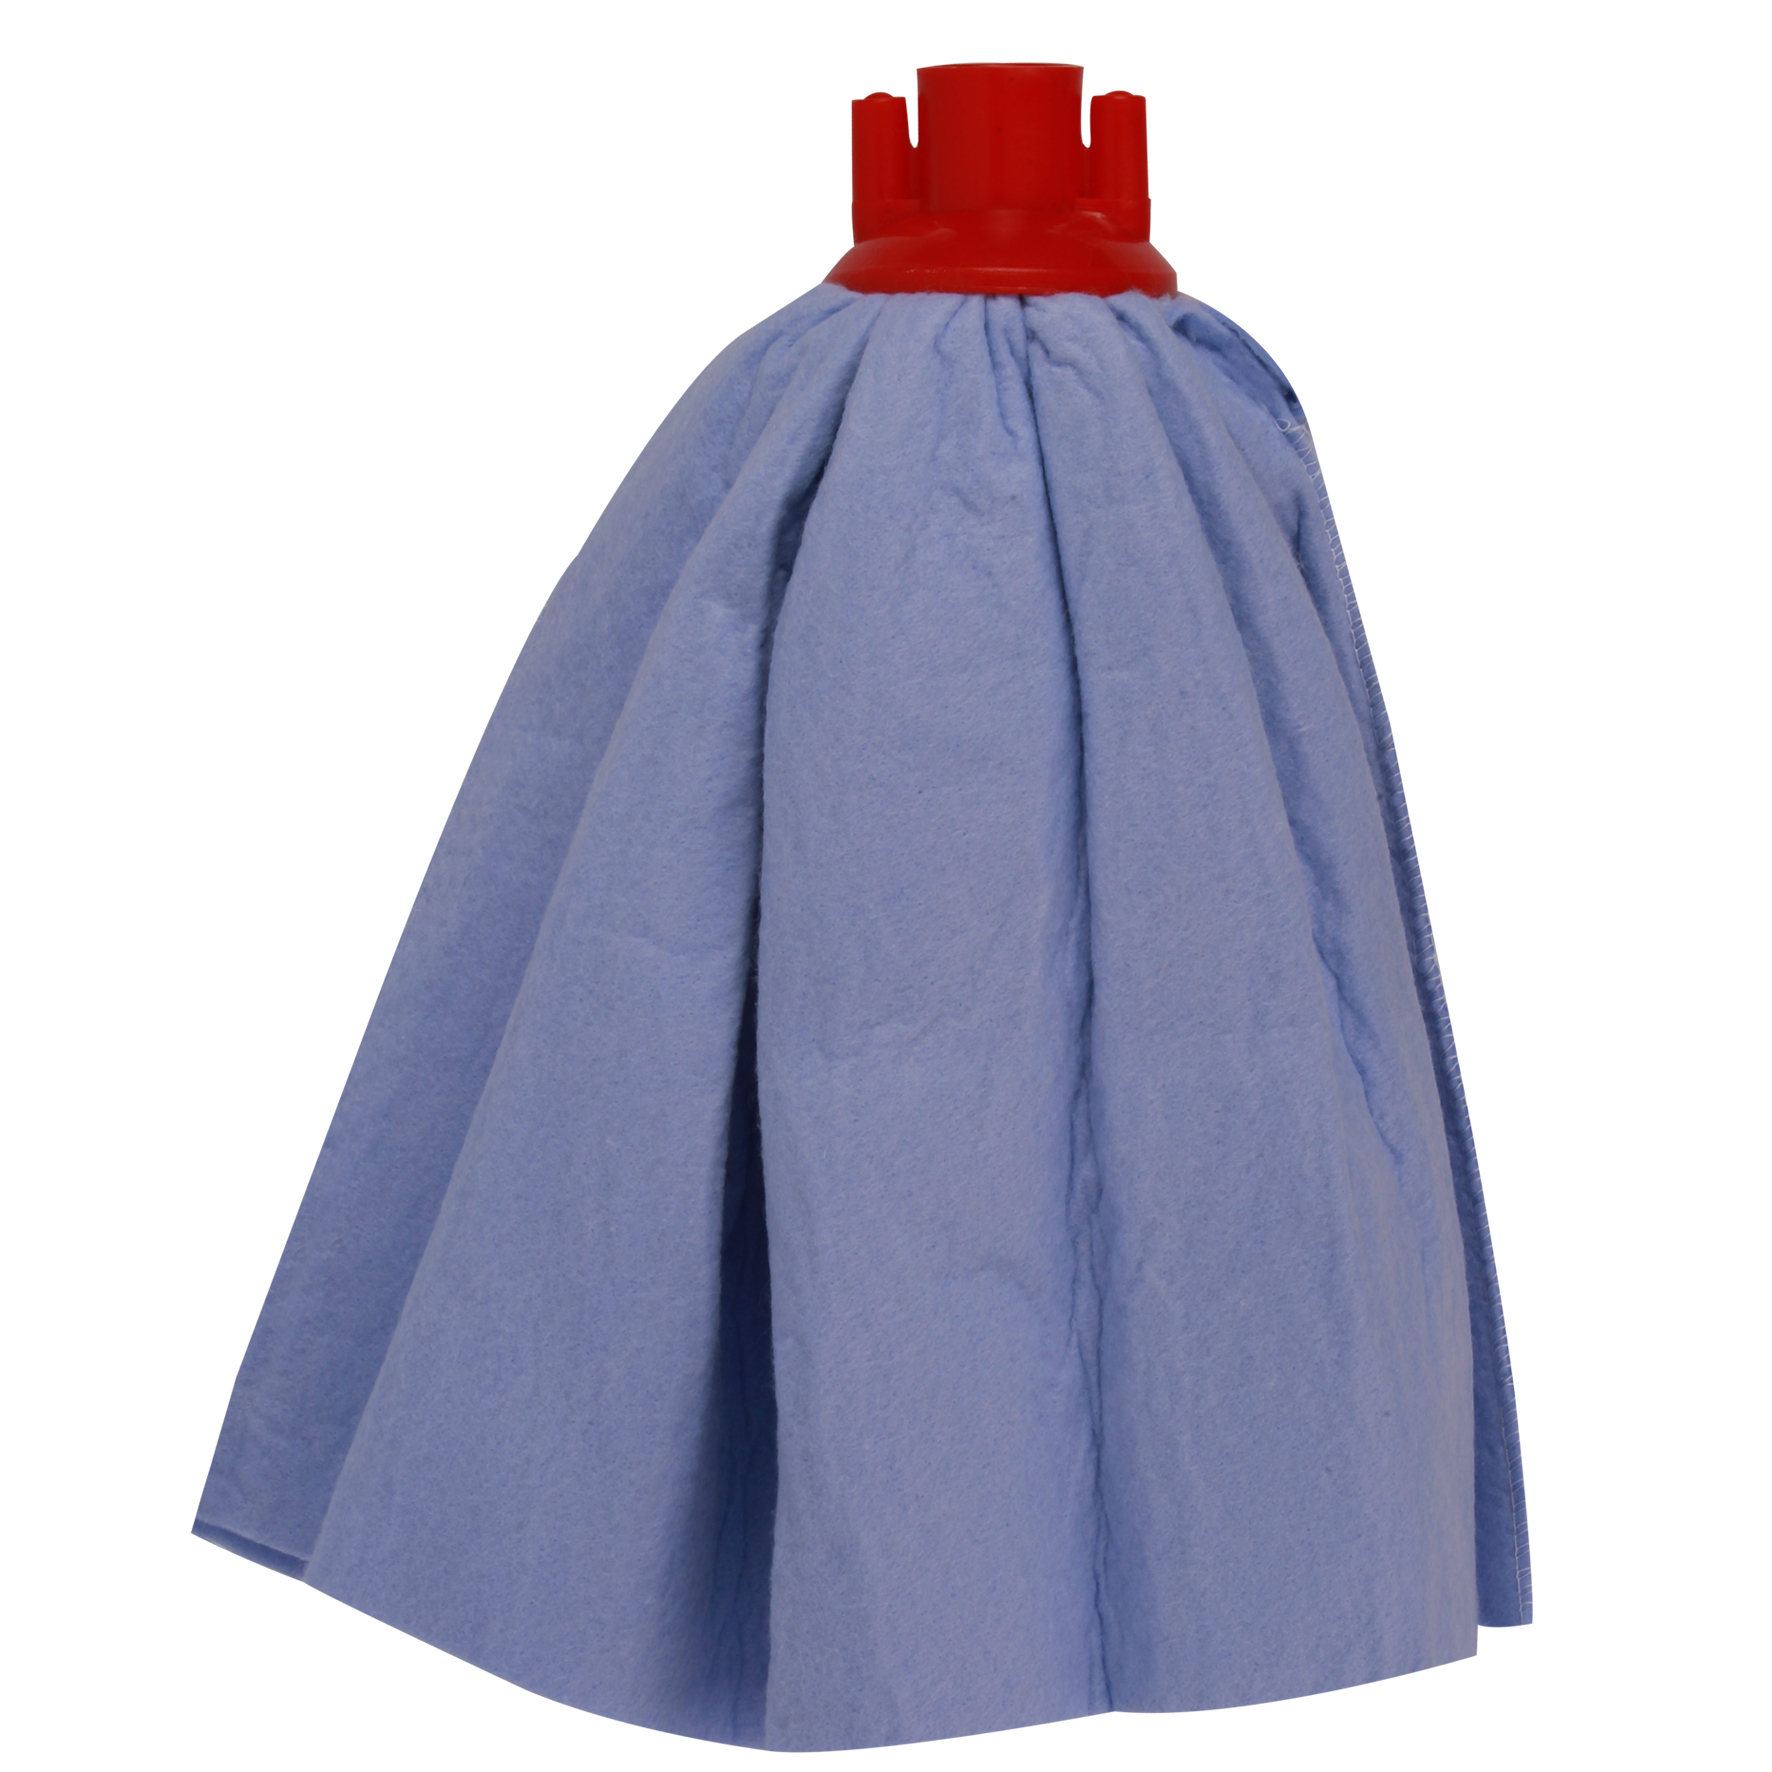 Household “skirt” type mop, 86% viscose – 14% polypropylene